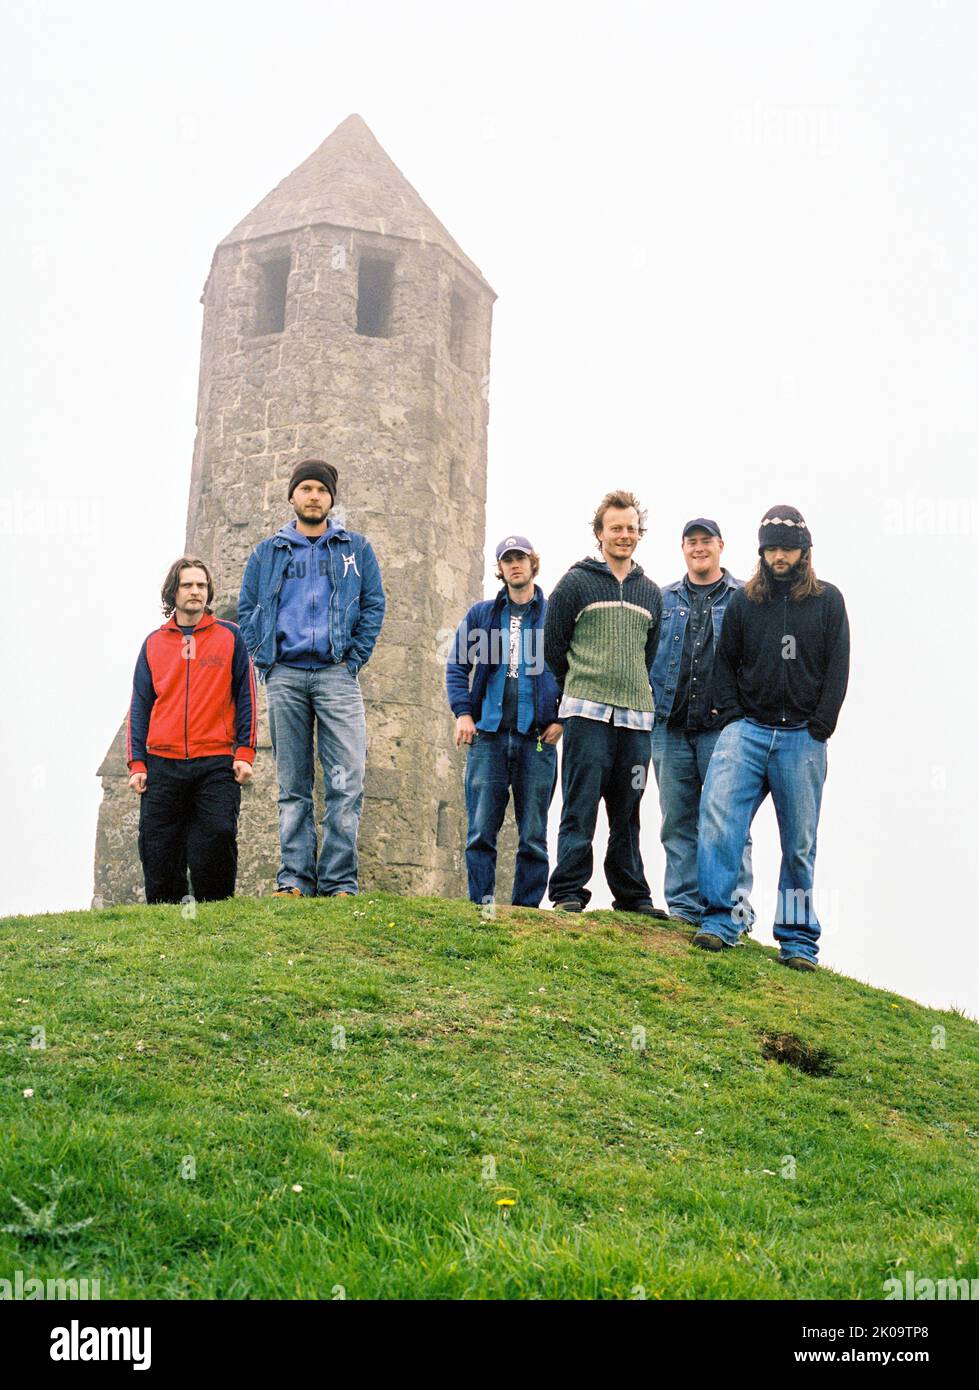 The Bees band photographié à l'Oratoire de Sainte-Catherine le 9th mai 2004, Chale, Île de Wight, Angleterre, Royaume-Uni. Banque D'Images